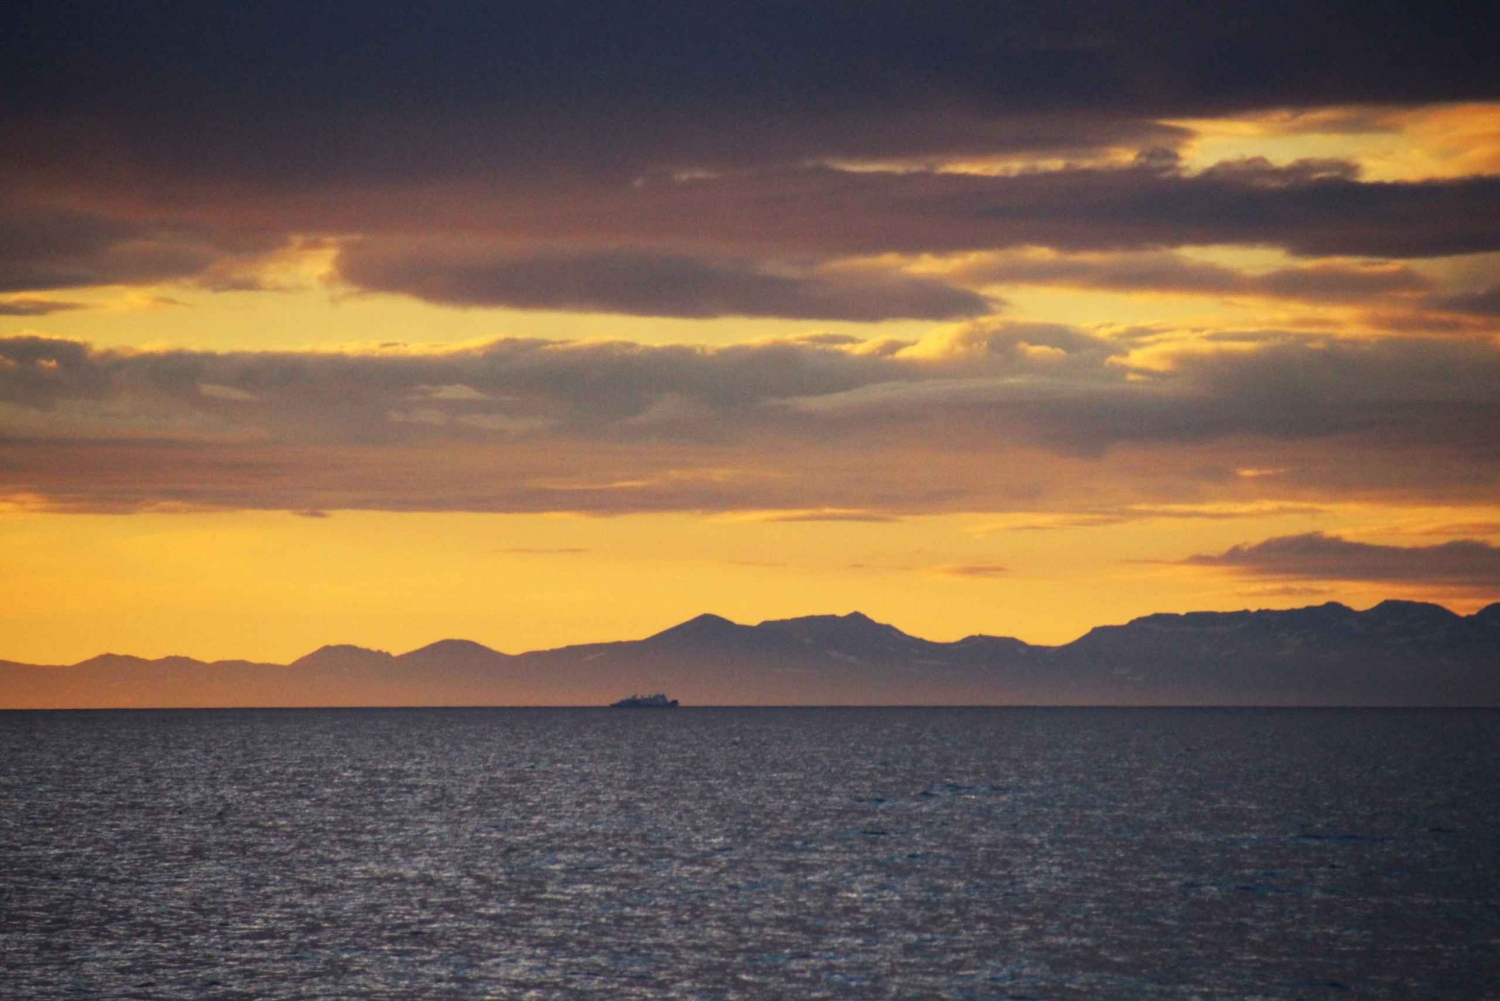 Reykjavík: Midnight Sun Whale Watching Cruise